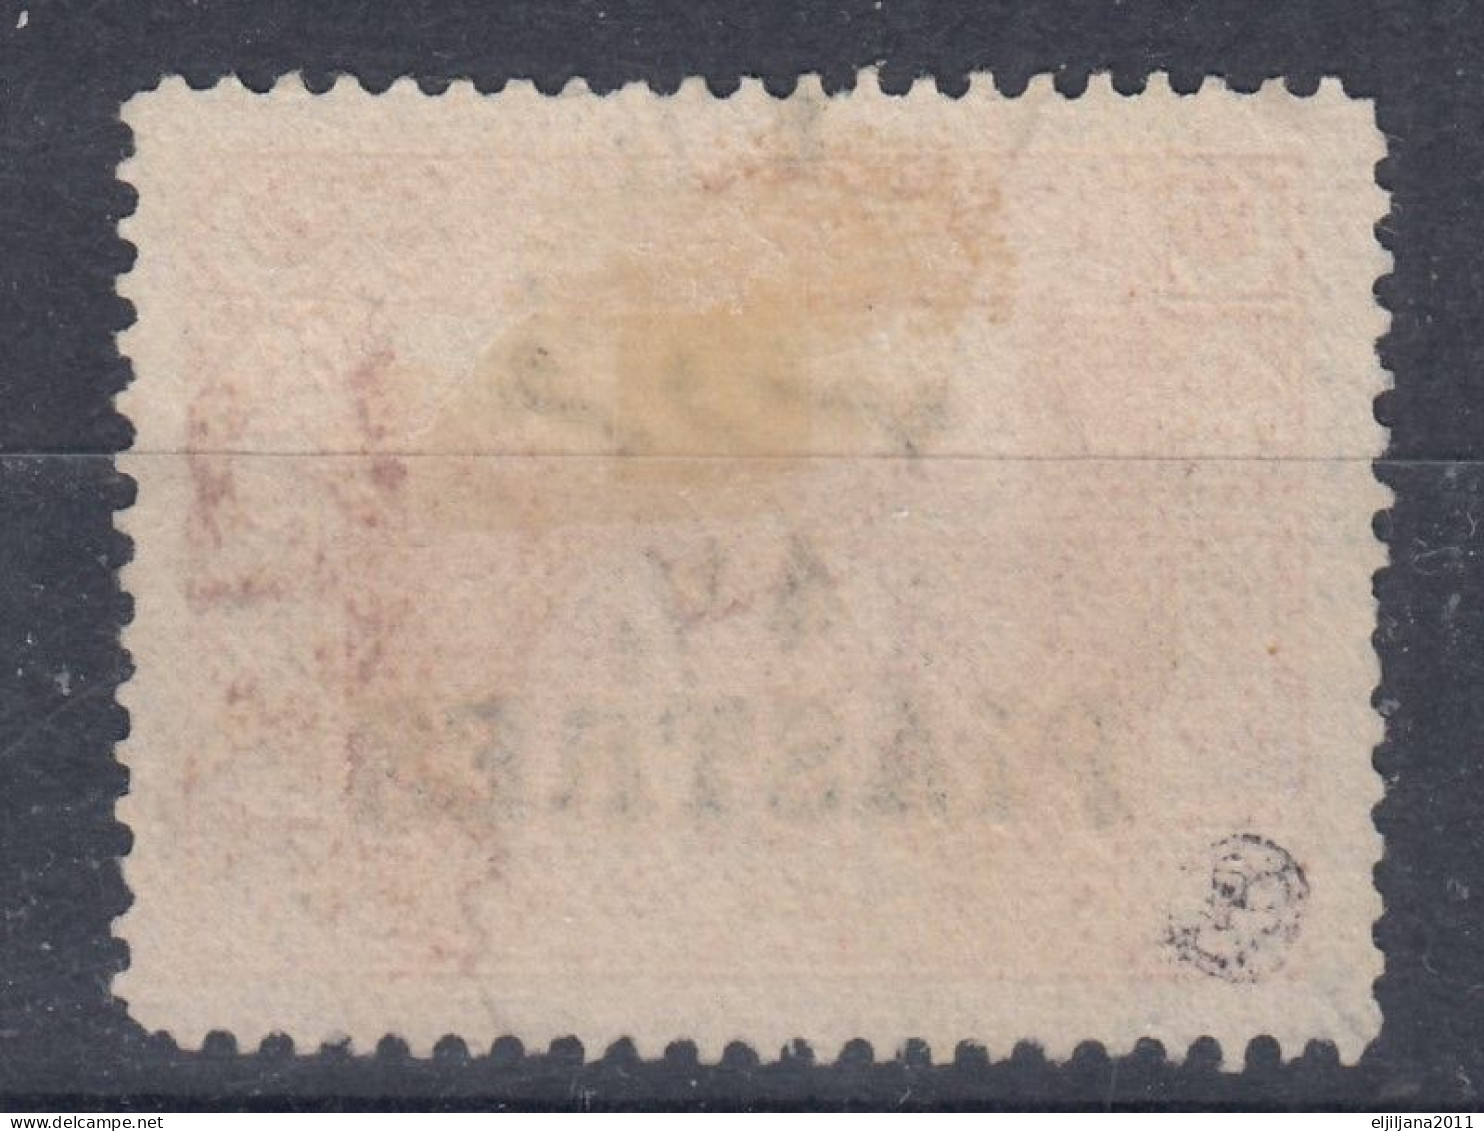 Turkey / Türkei 1921 ⁕ Surcharge - Overprint Mi.687 ⁕ 1v Used - Used Stamps